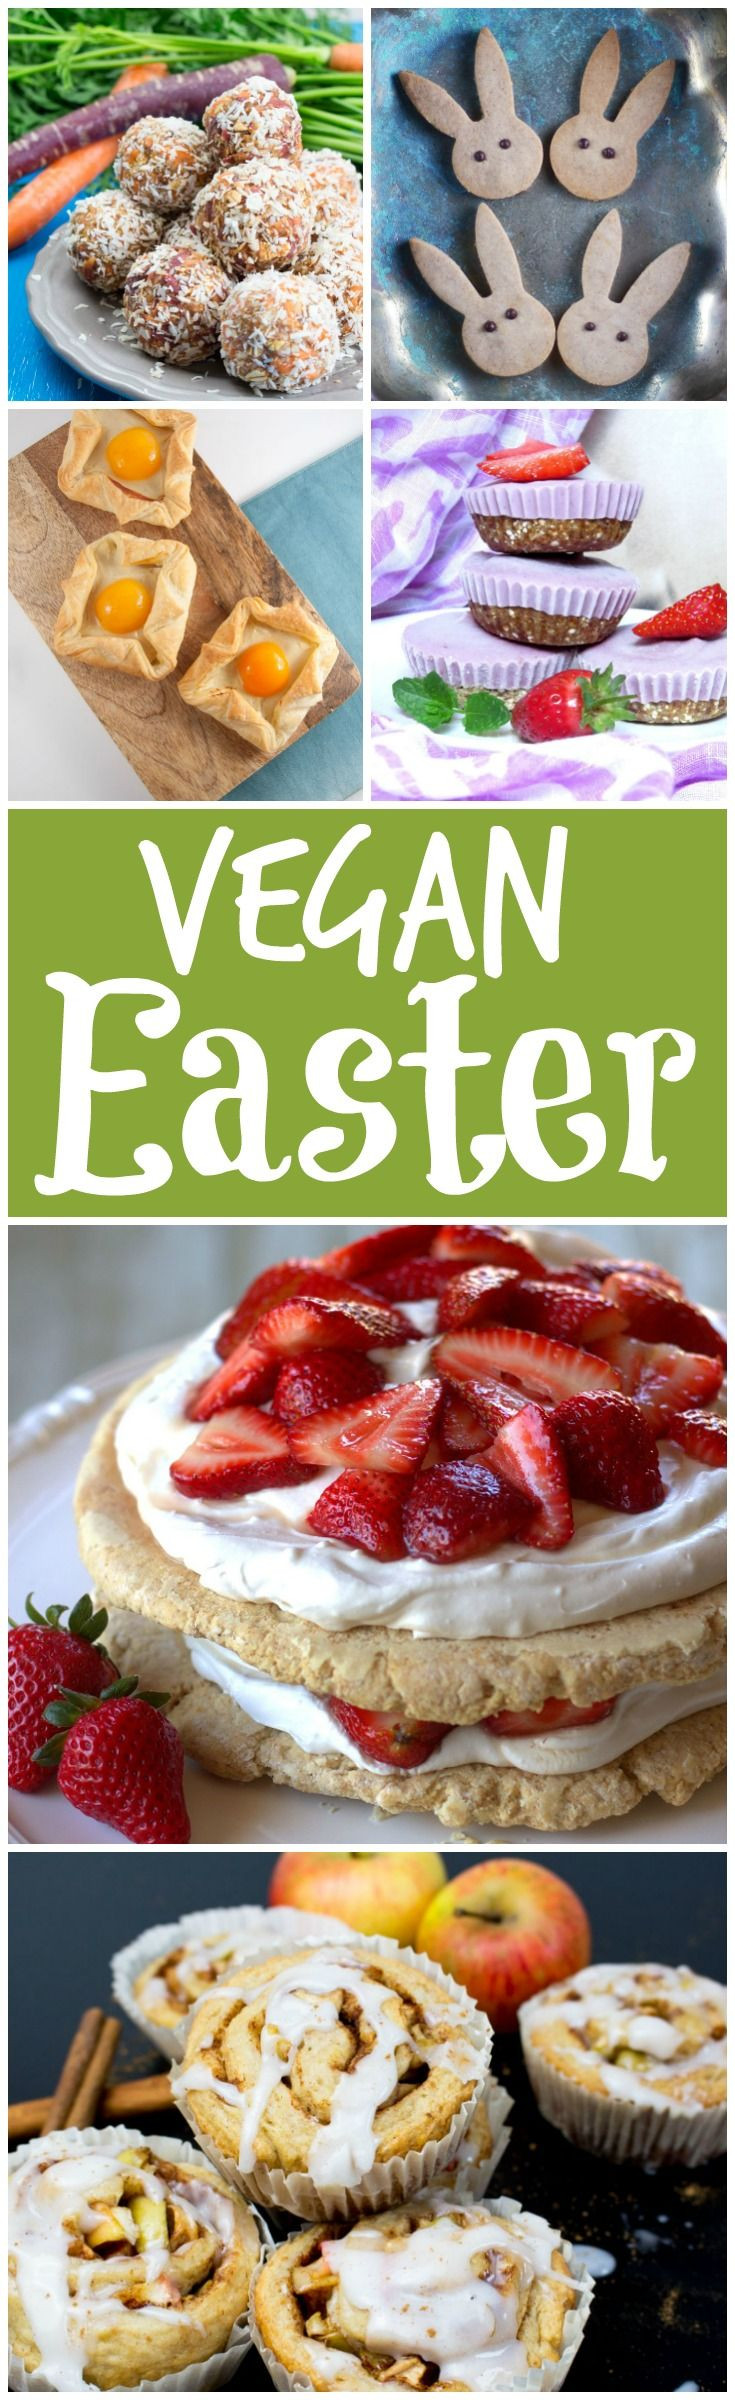 Vegetarian Recipes For Easter Dinner
 25 best Easter dinner menu ideas on Pinterest